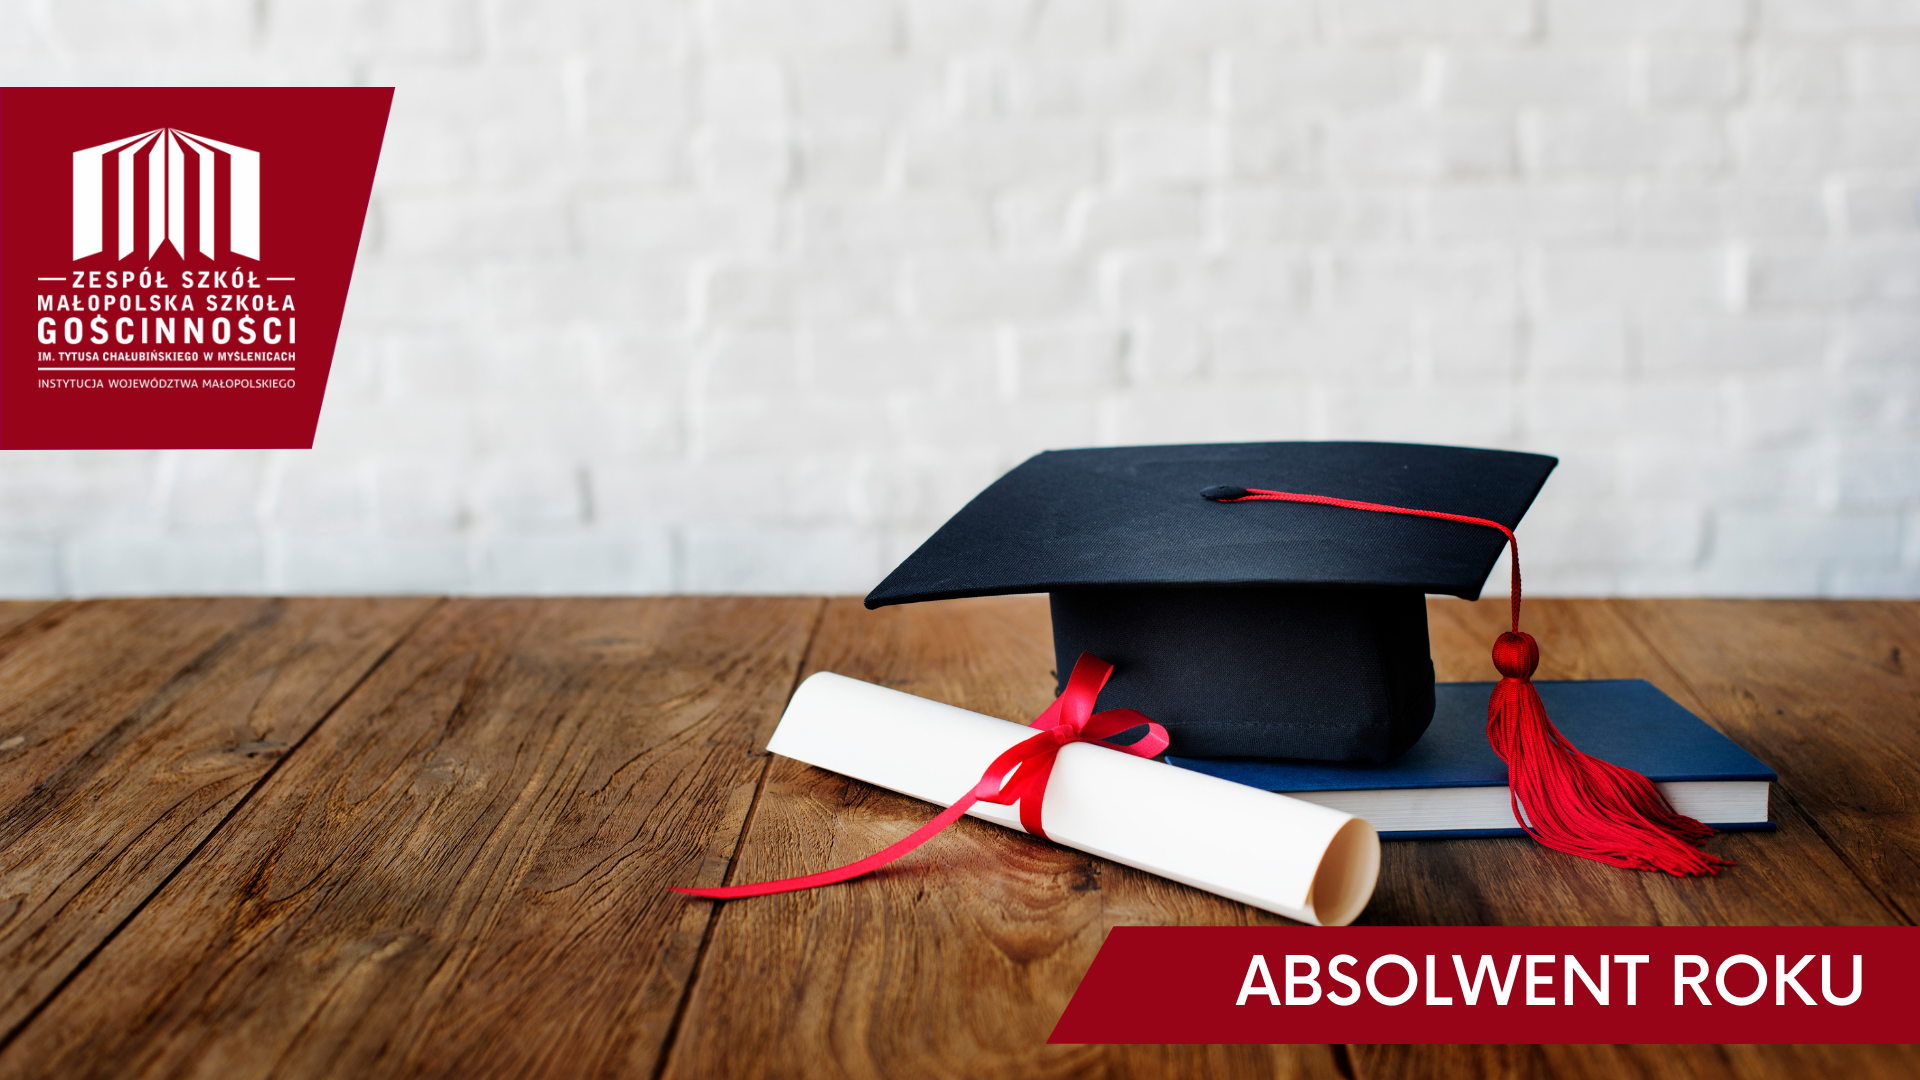 czapka absolwenta, książka i dyplom przewiązany czerwoną wstążką, położone na drewnianym stole